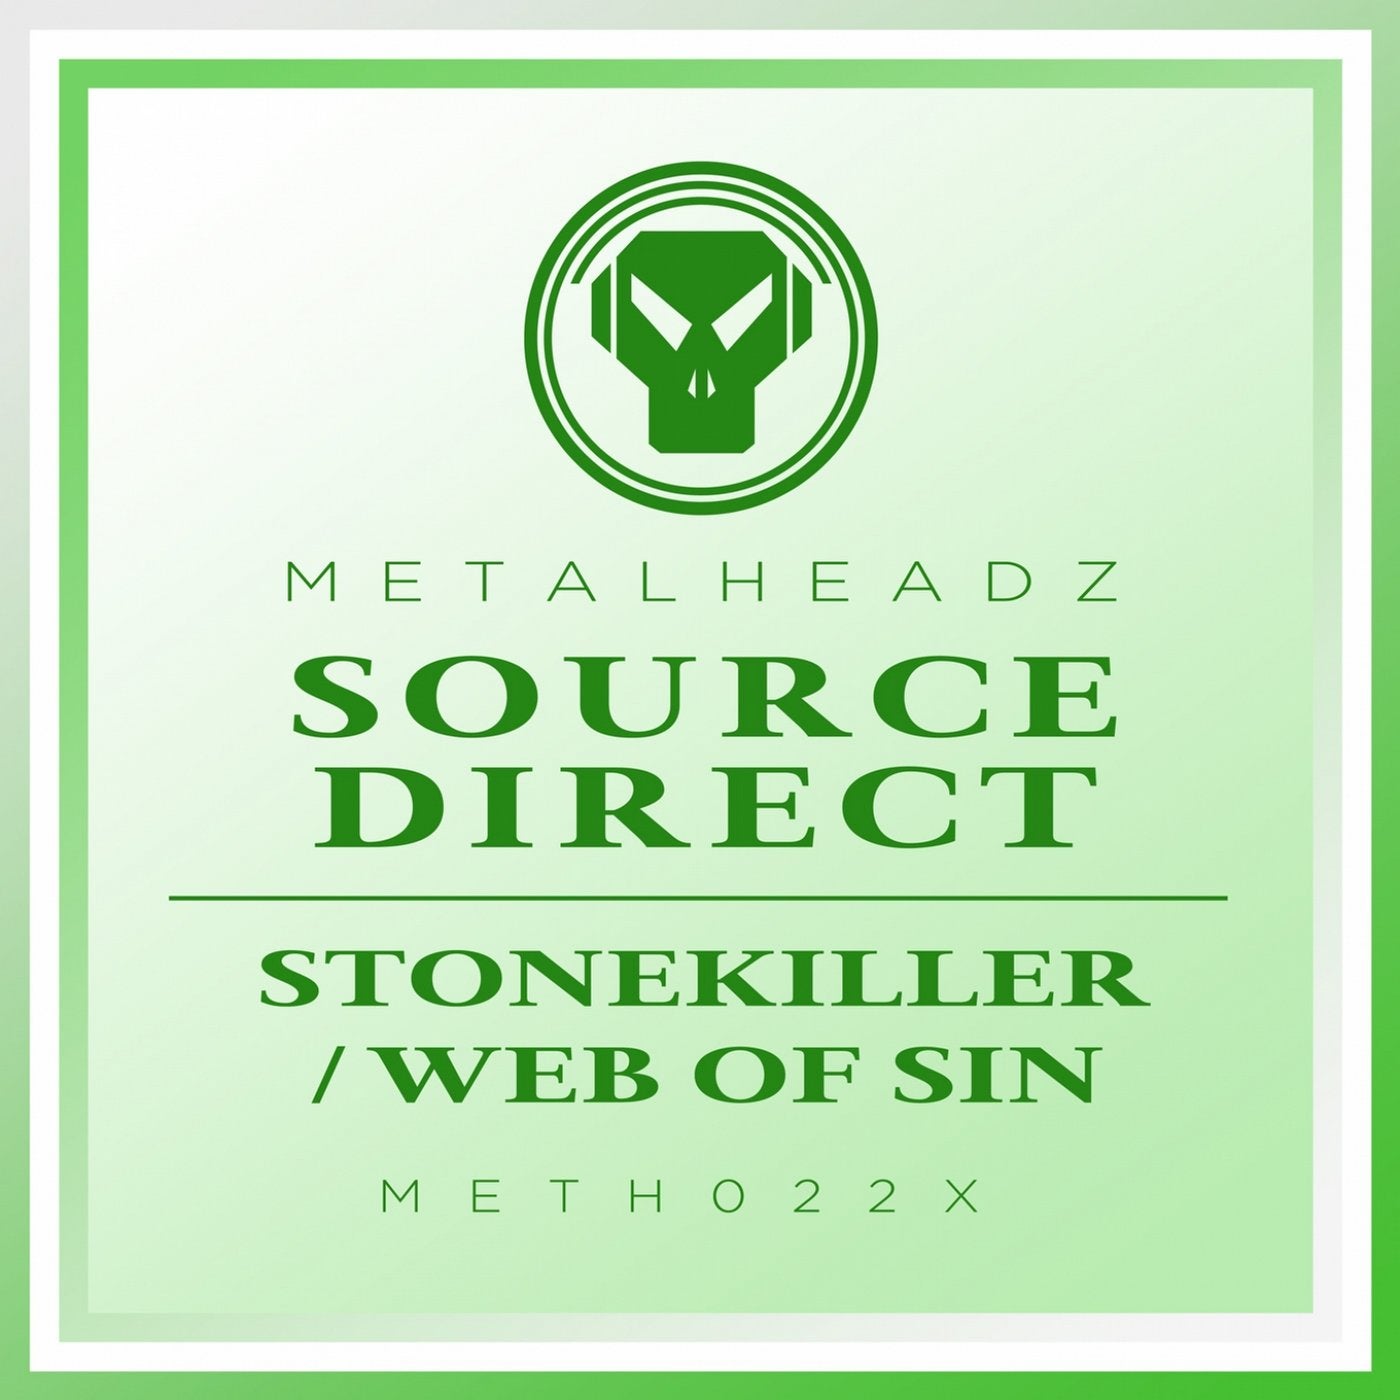 Stonekiller / Web of Sin (2017 Remaster)